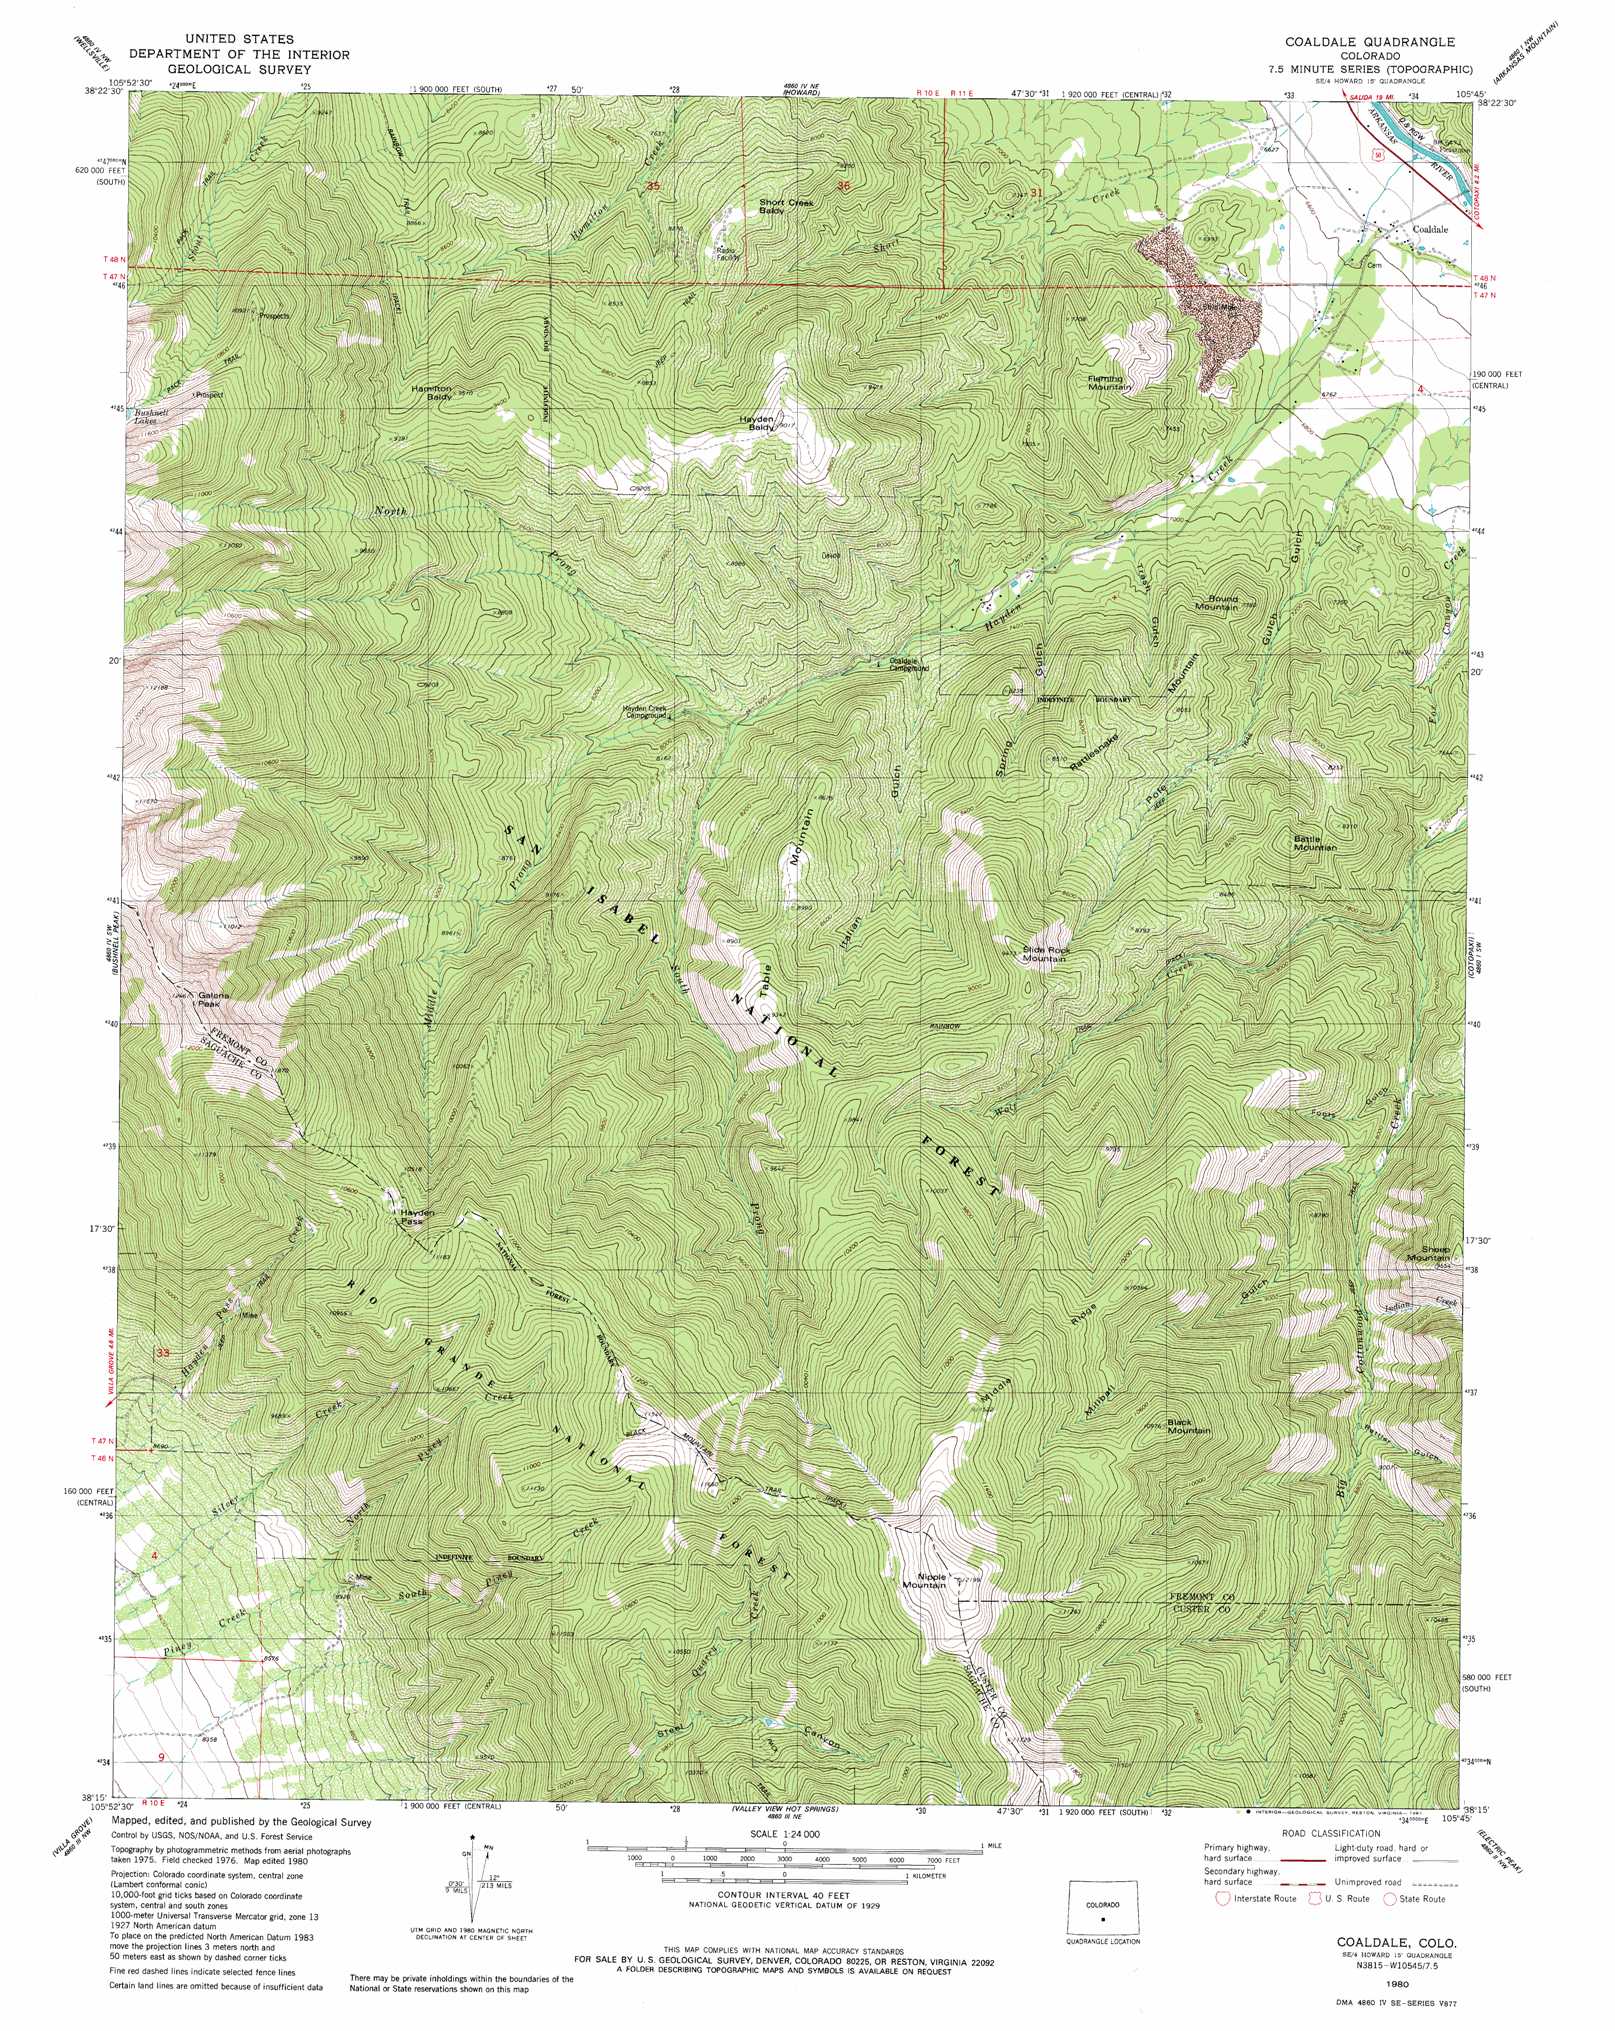 Coaldale topographic map, CO - USGS Topo Quad 38105c7